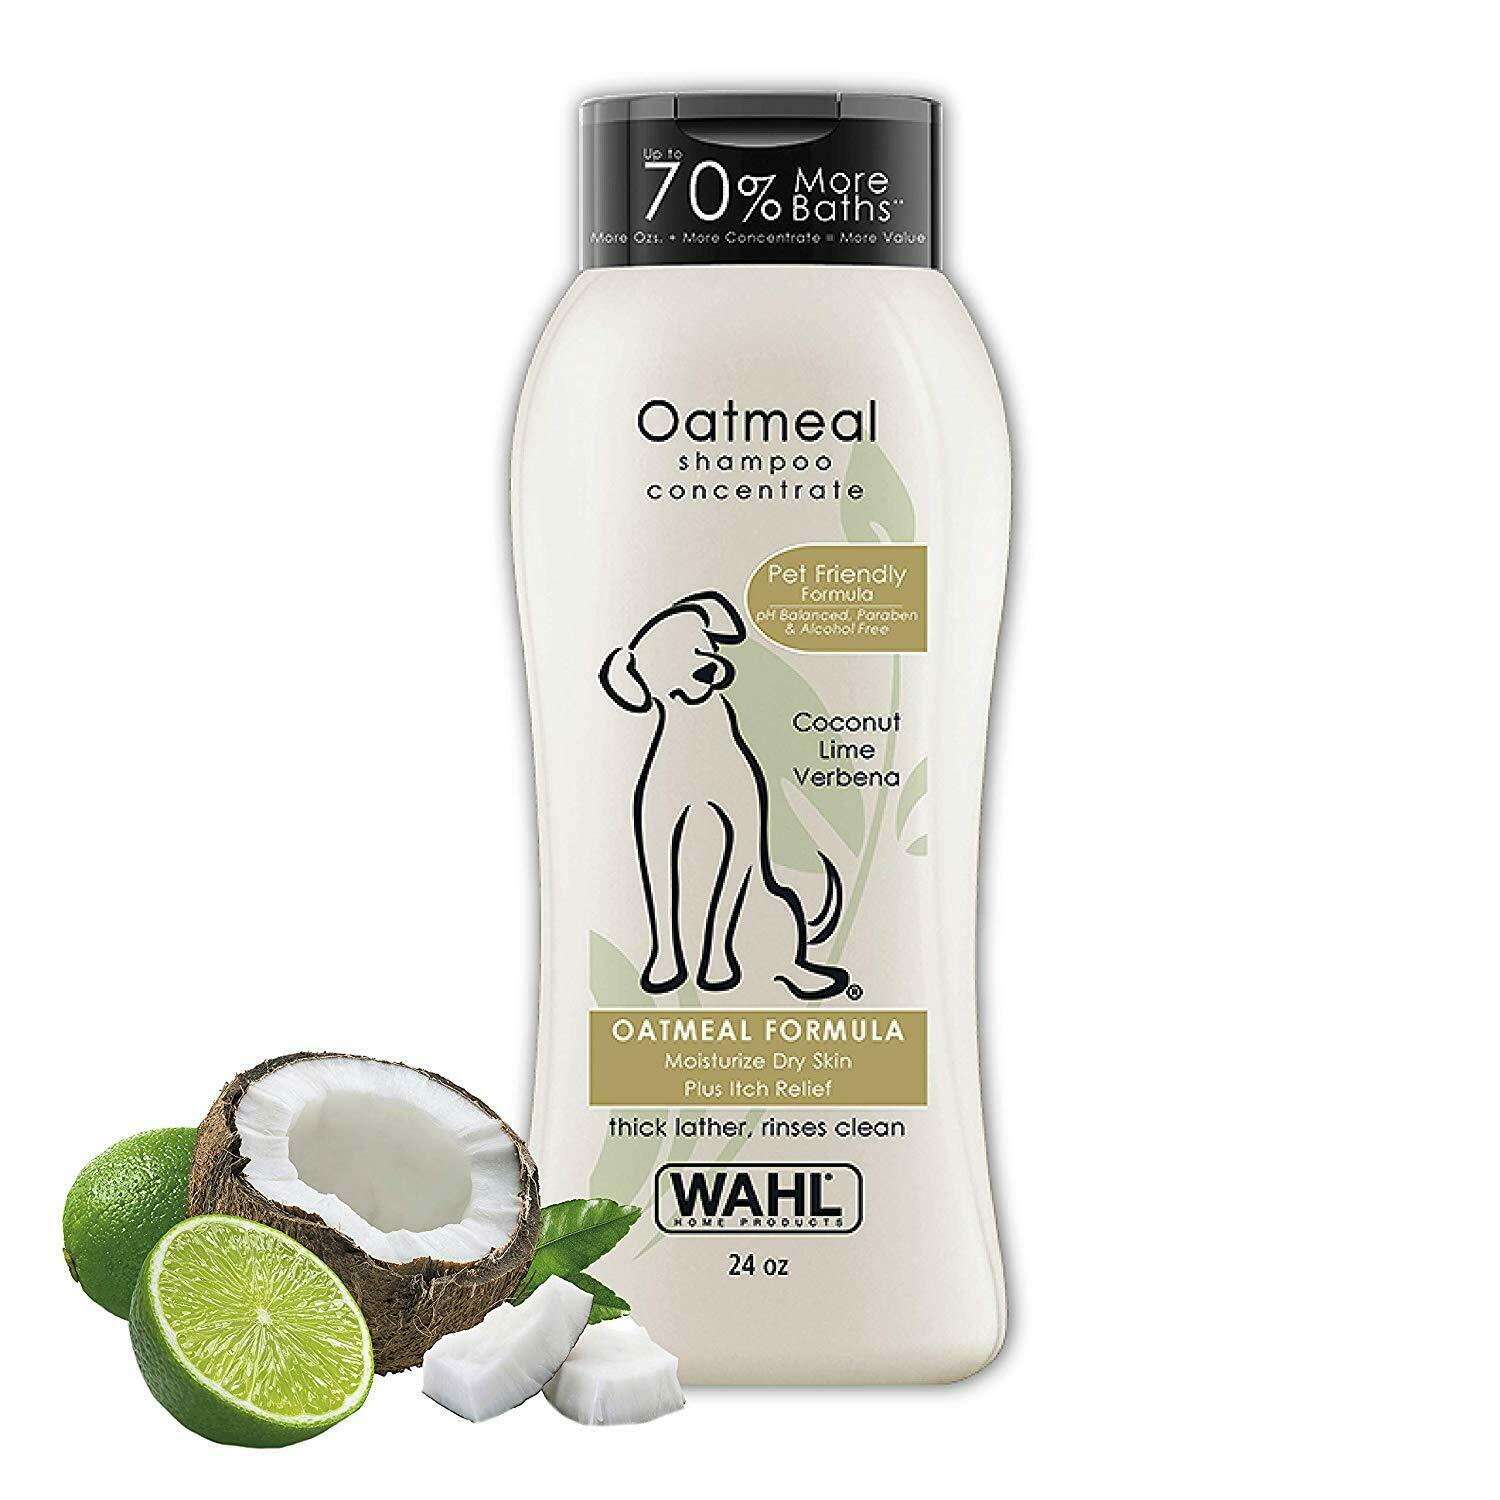 Wahl Dog/Pet Shampoo, Oatmeal,Coconut and Lime verbena, 24 Oz - image 1 of 3